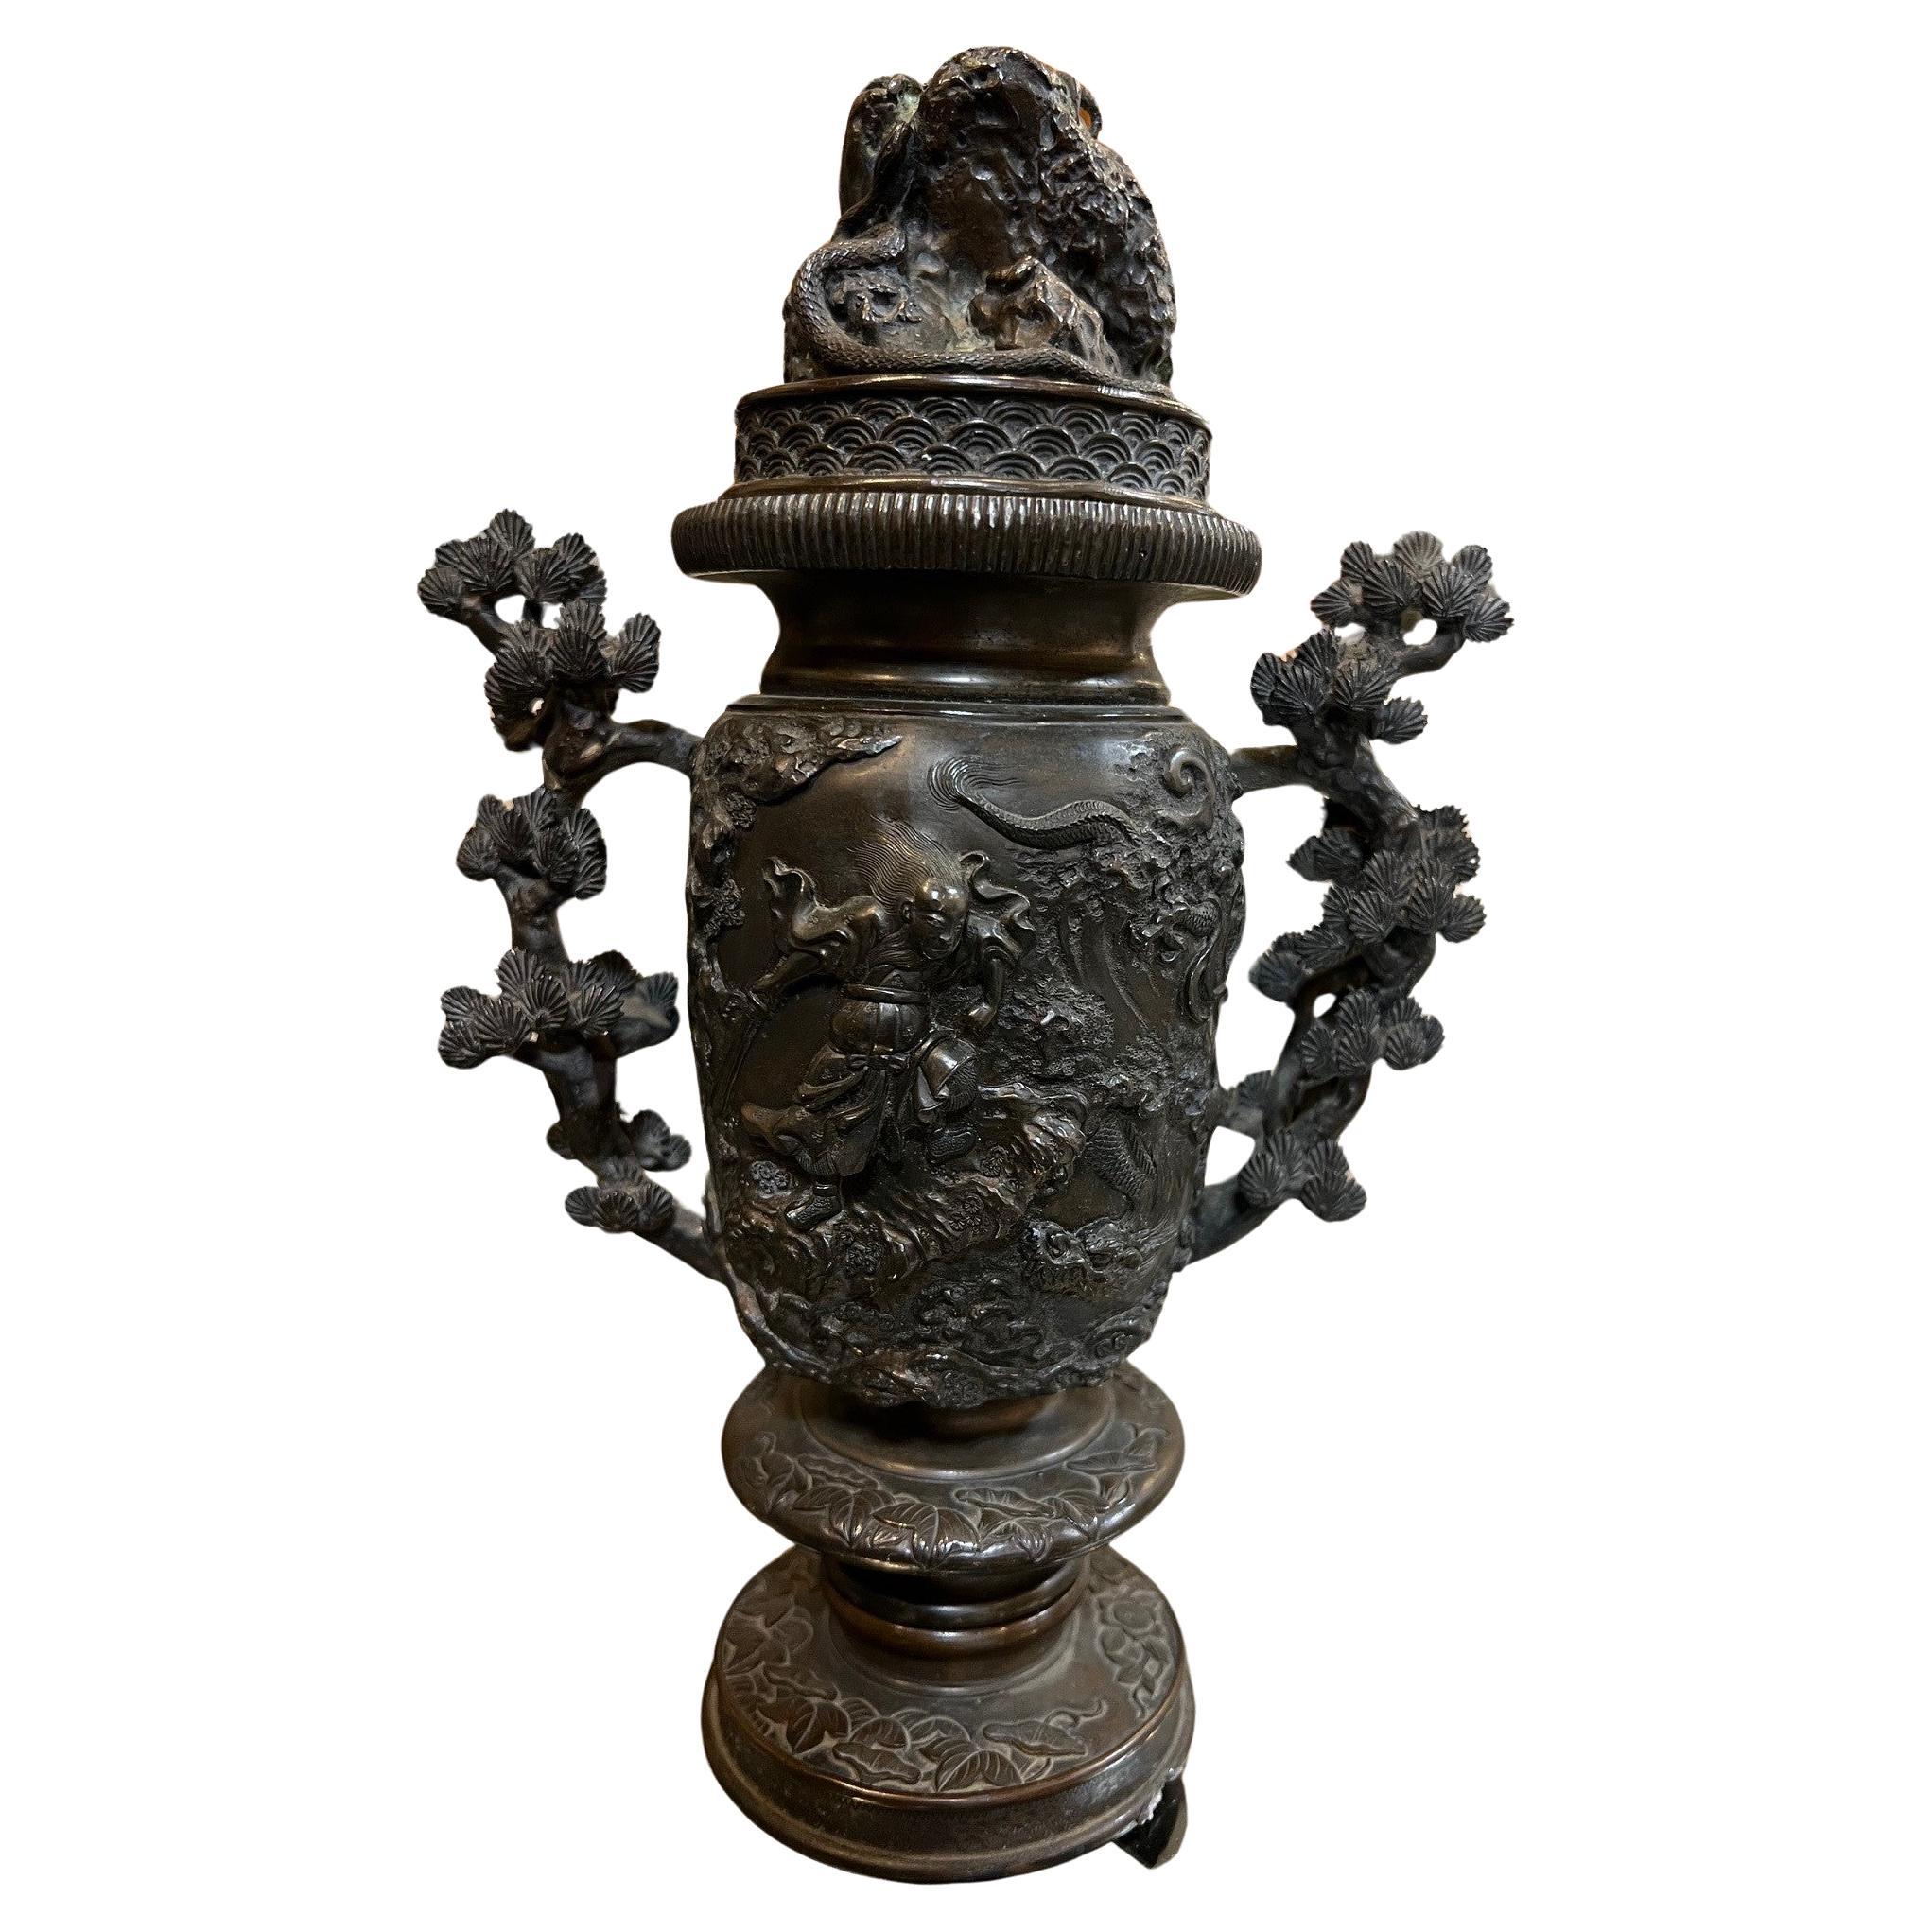 Un encensoir en bronze du 19e siècle. Ce brûleur d'encens est très détaillé, avec des poignées en forme de bonsaïs. La partie centrale présente un aigle volant au-dessus de serpents d'un côté et un guerrier tenant une épée de l'autre. Le brûleur